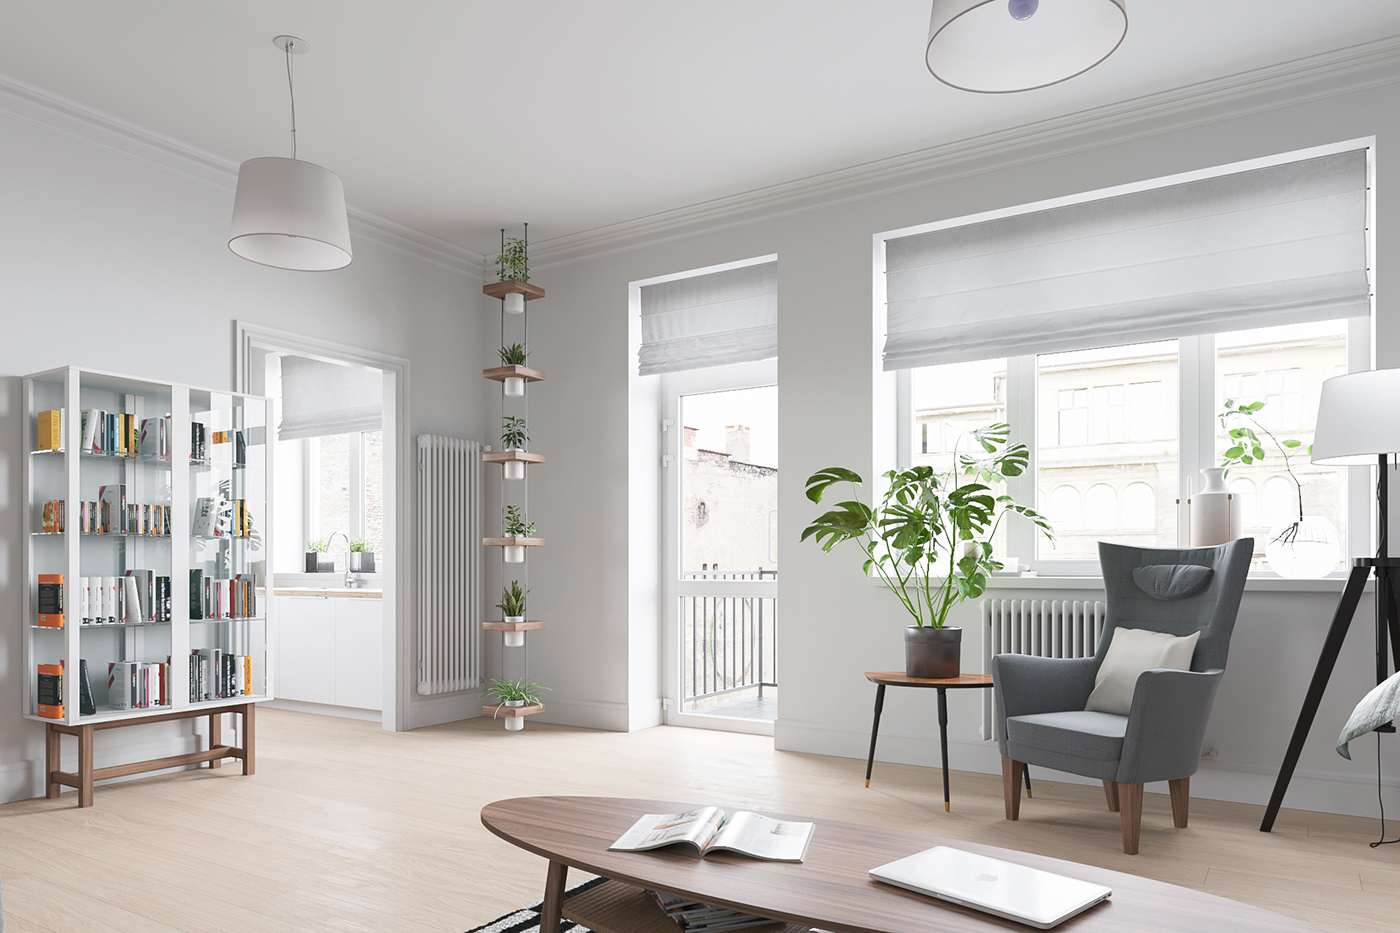 Interior archviz design ikea poland warsaw Render apartment